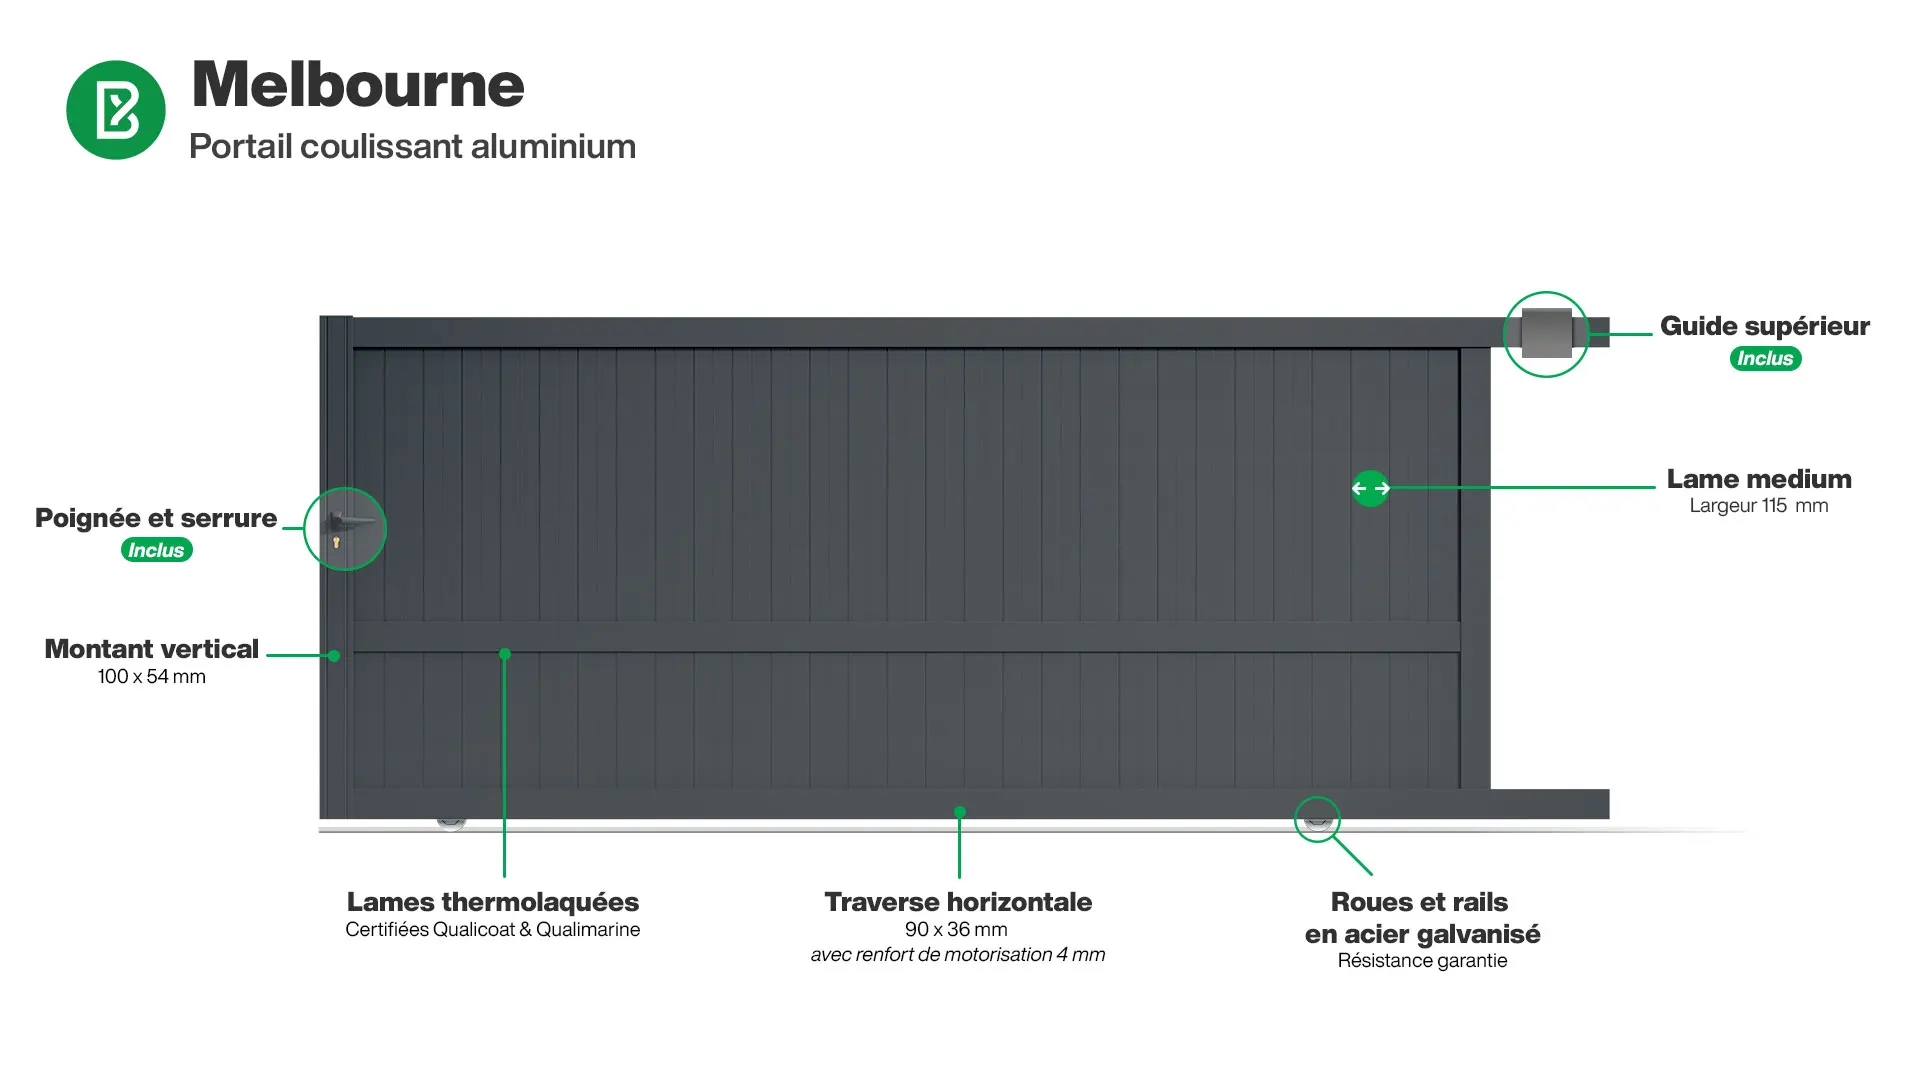 Portail : Infographie d'un portail coulissant aluminium modèle MELBOURNE